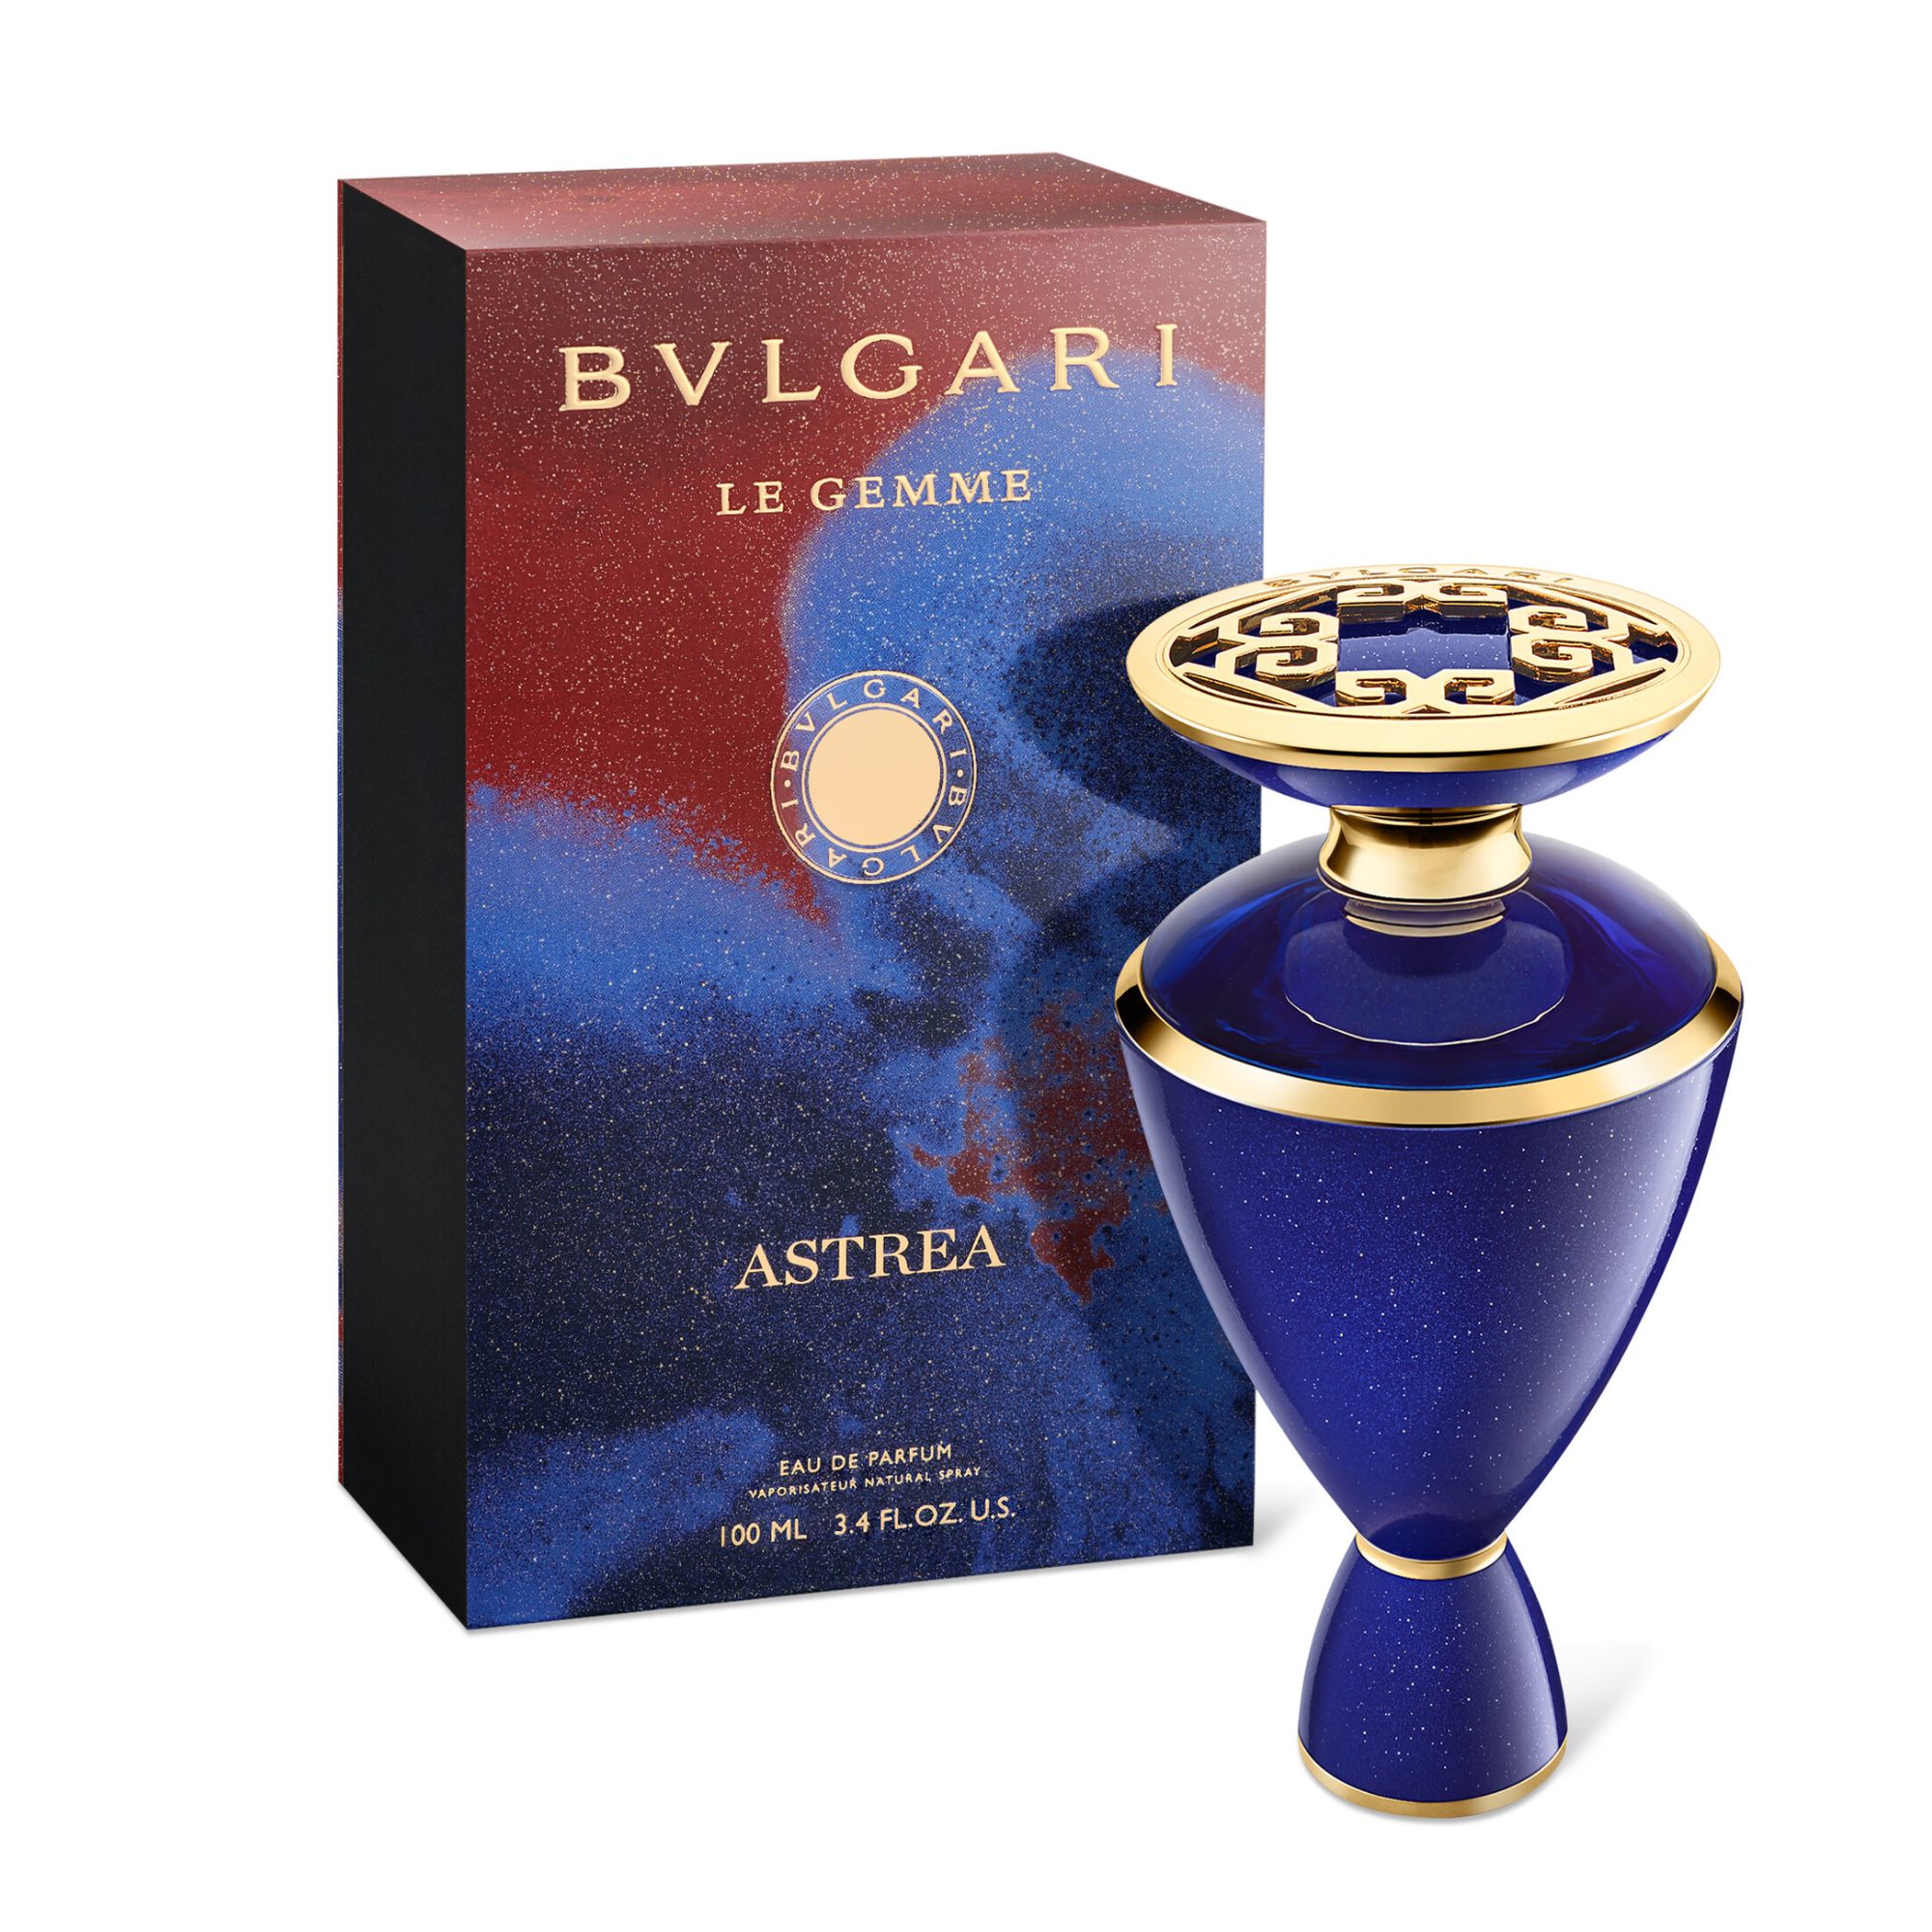 Bvlgari Le Gemme Astrea Eau de Parfum for women